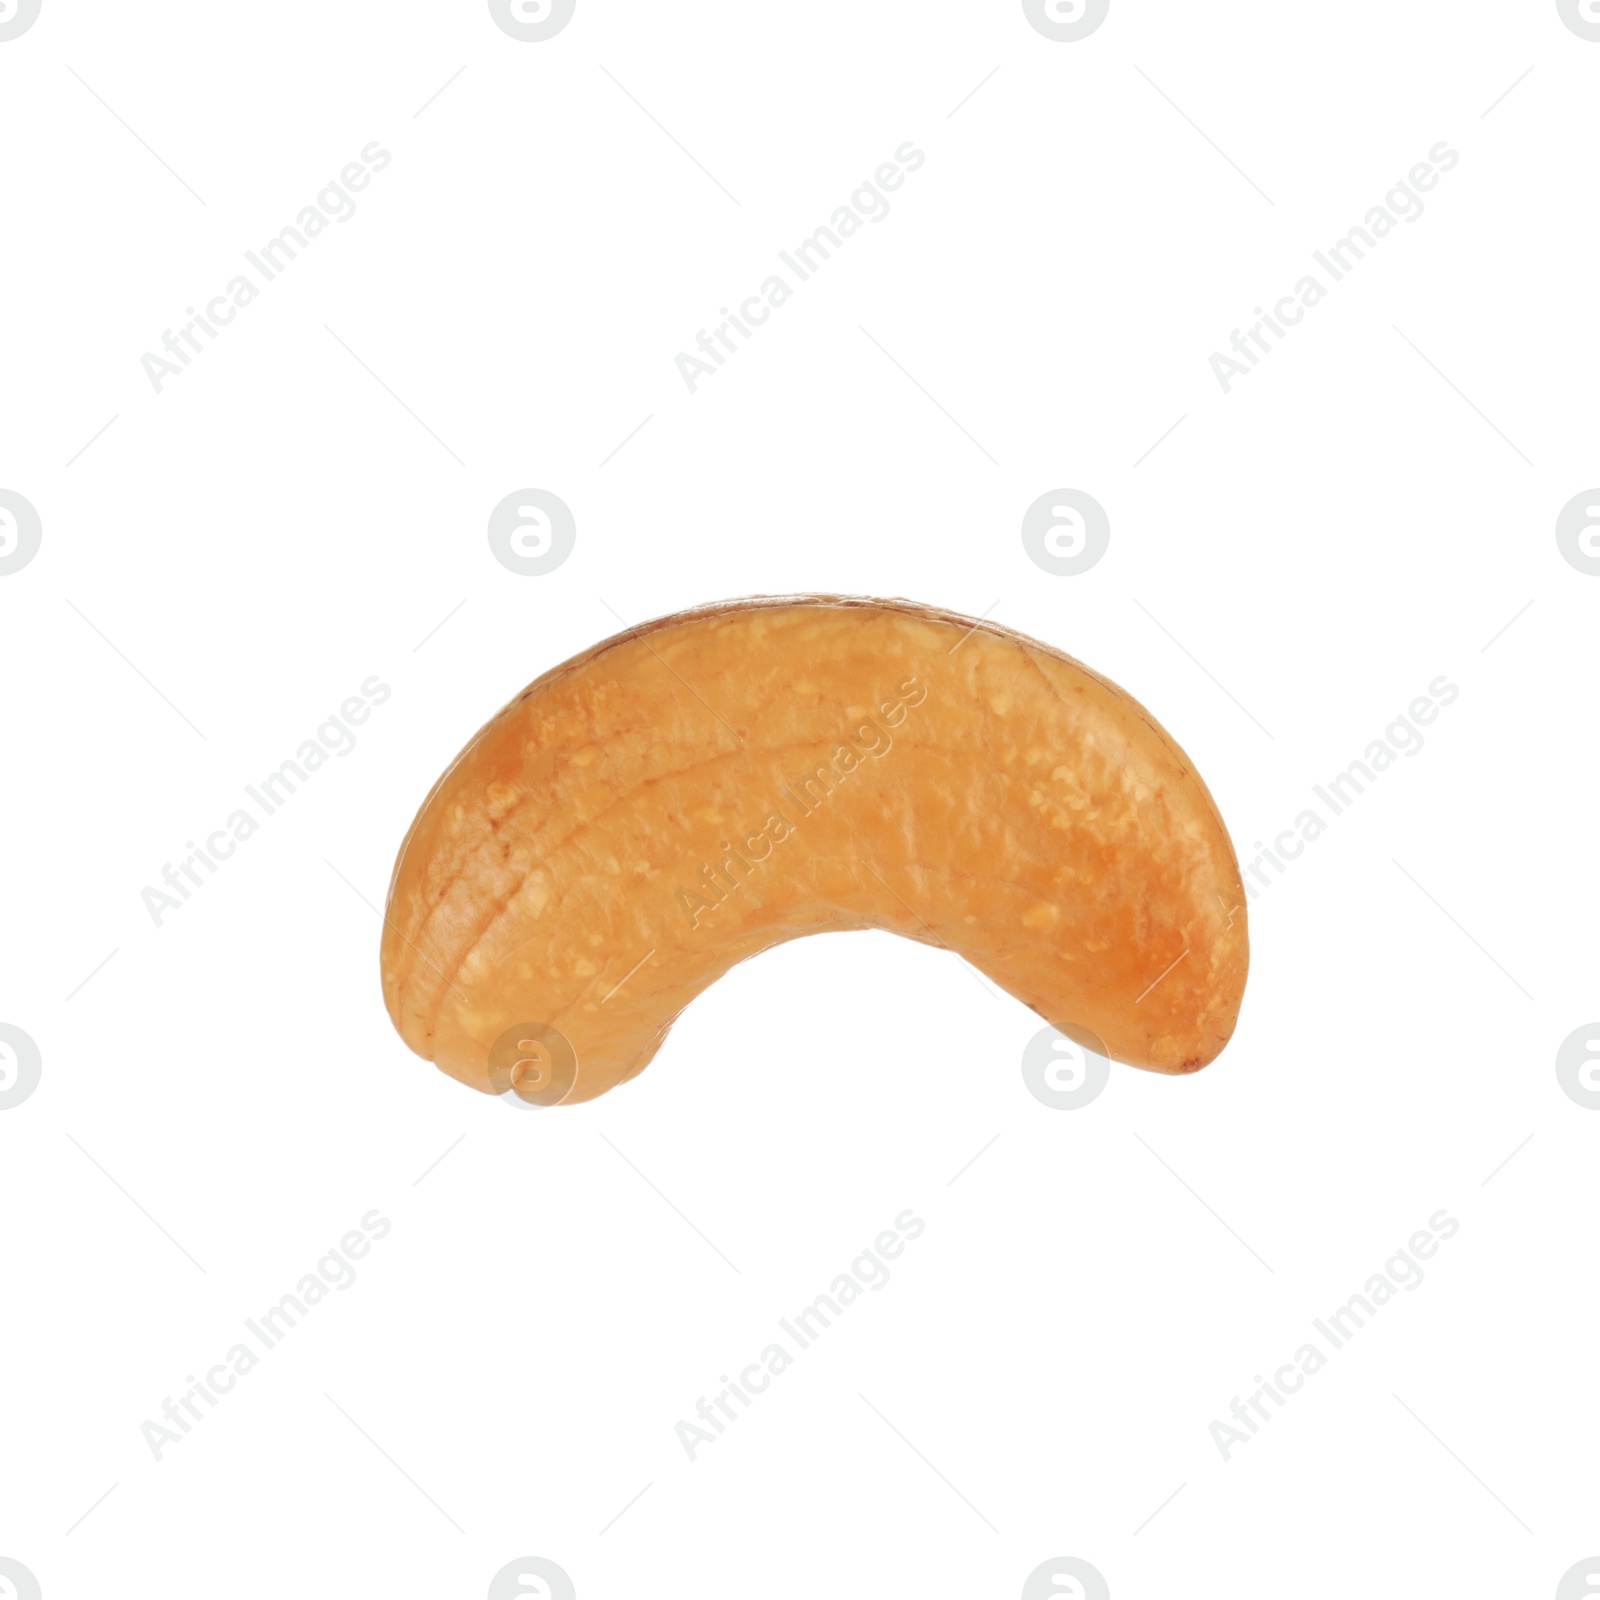 Photo of Tasty organic cashew nut isolated on white